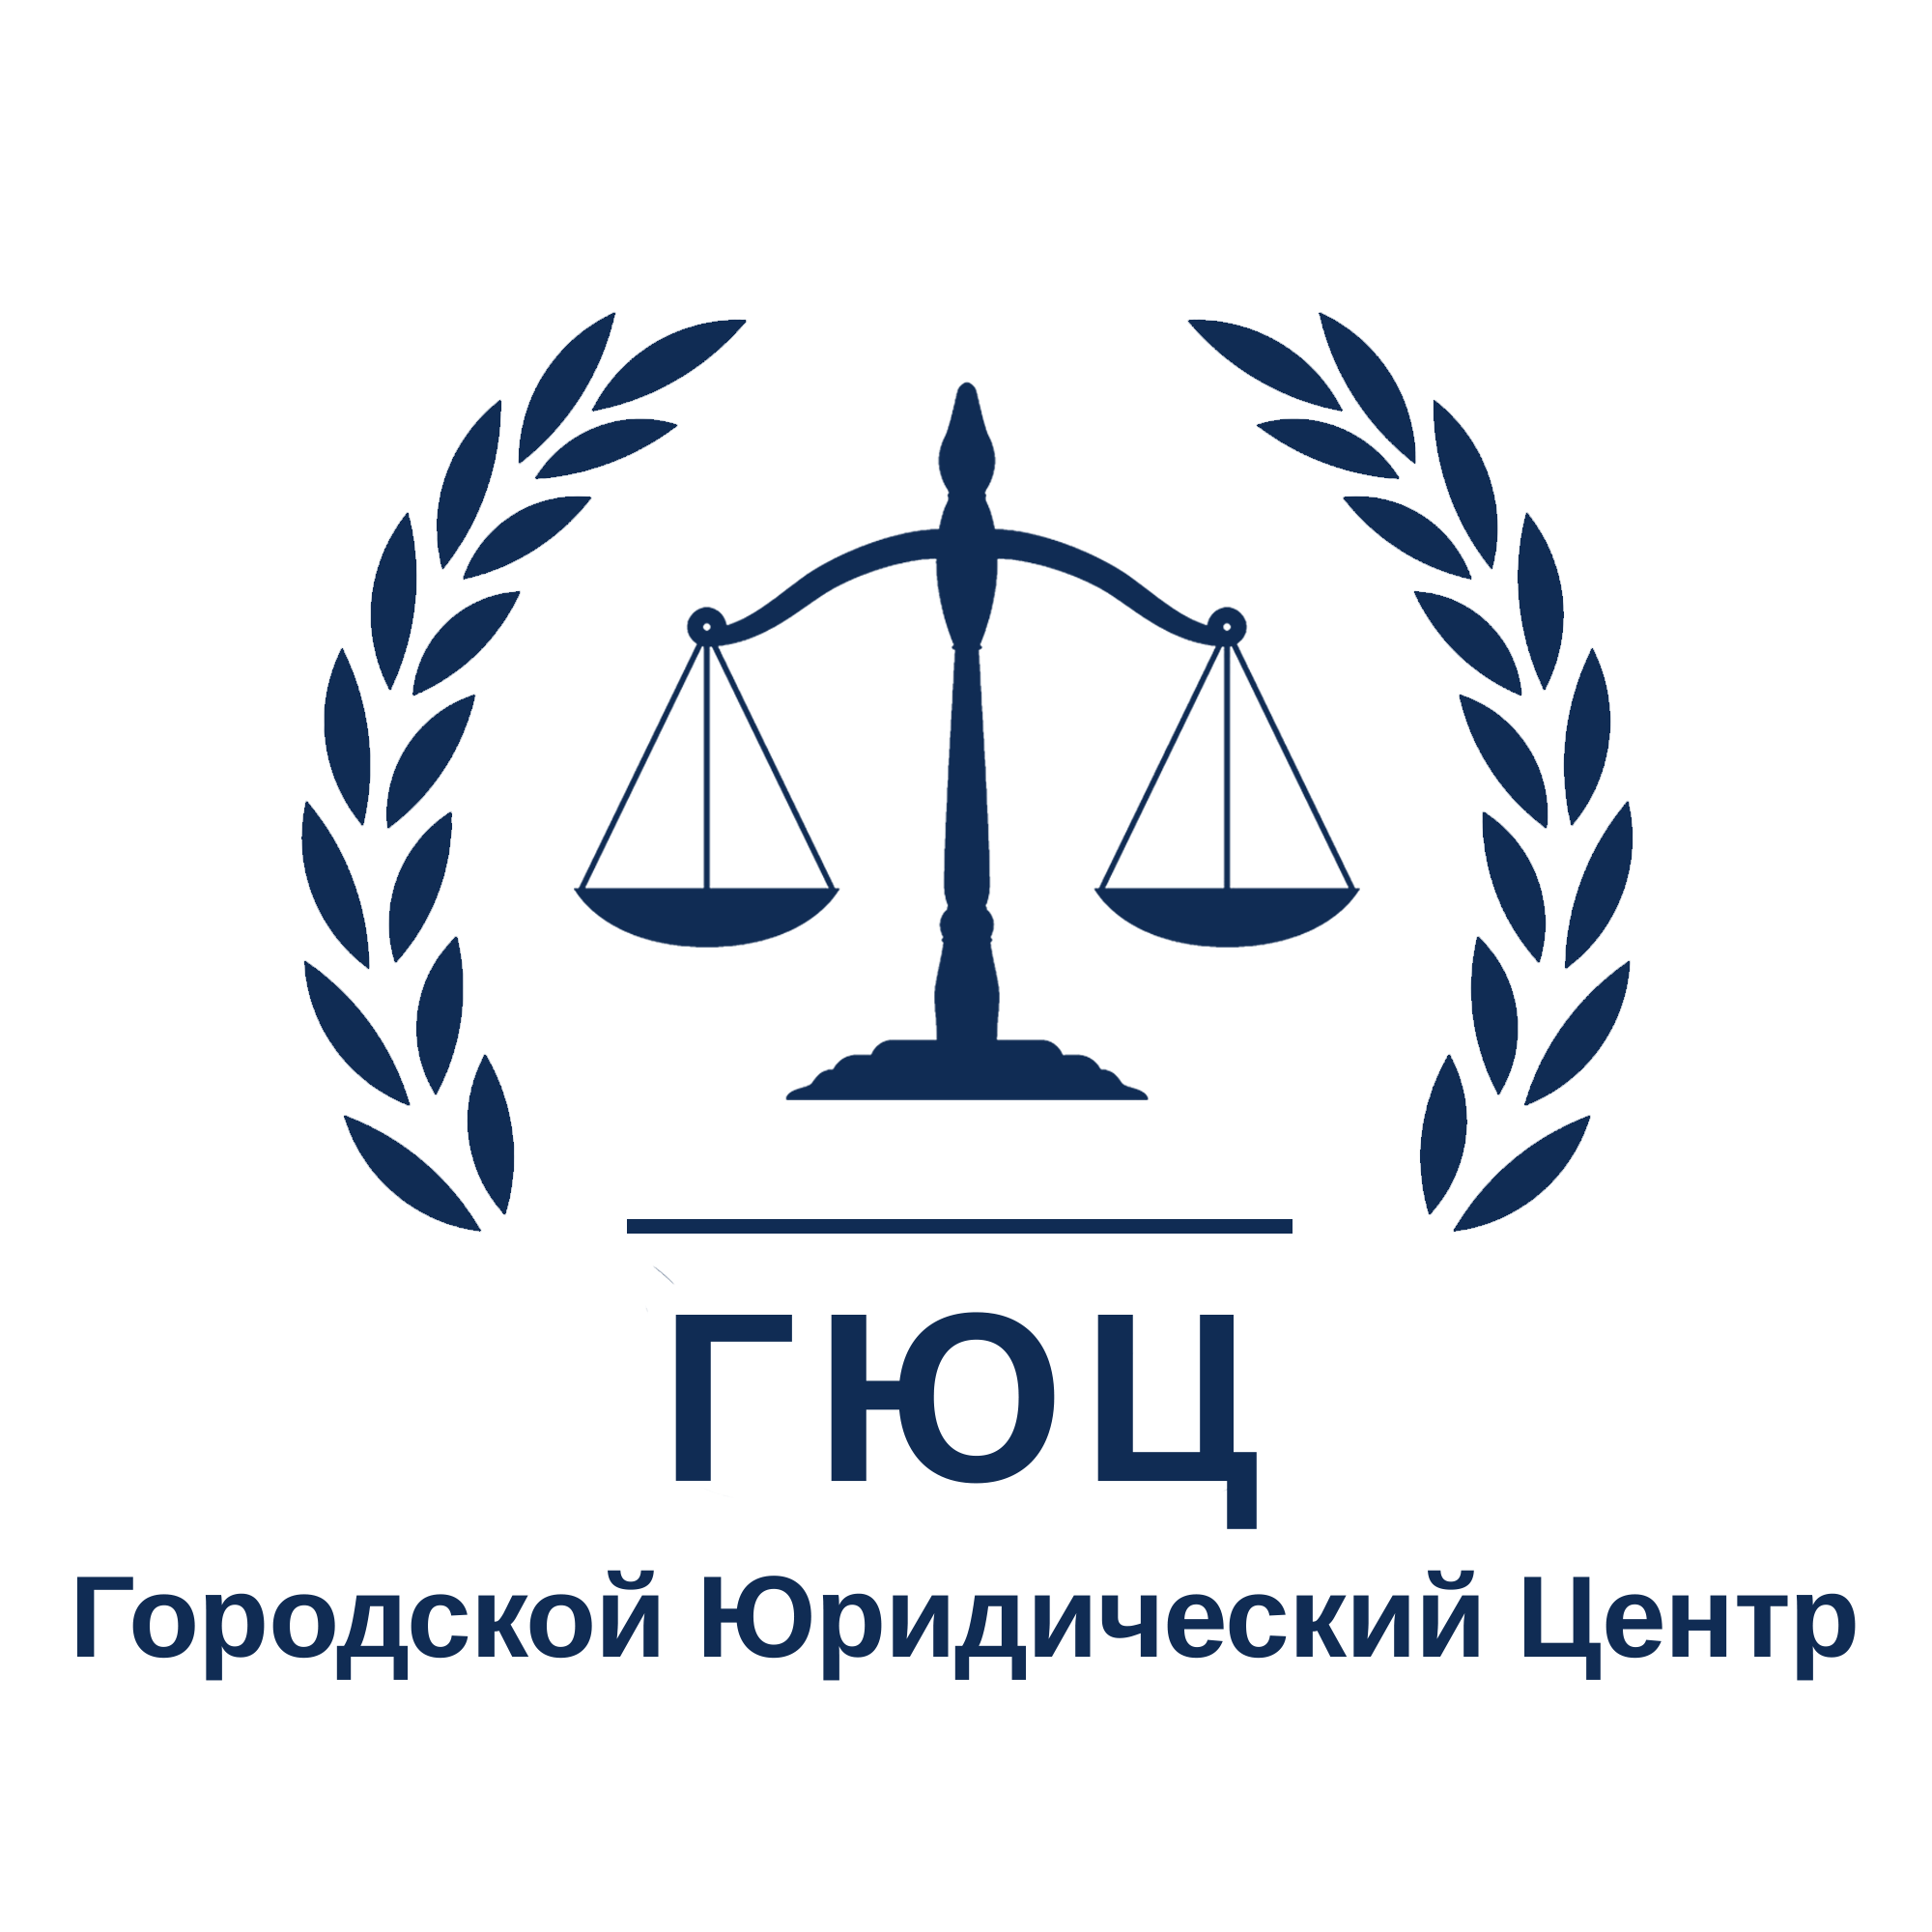 Городской юридический центр. Городской юрист. Городской юридический центр логотип. Городской юридический центр Новосибирск.